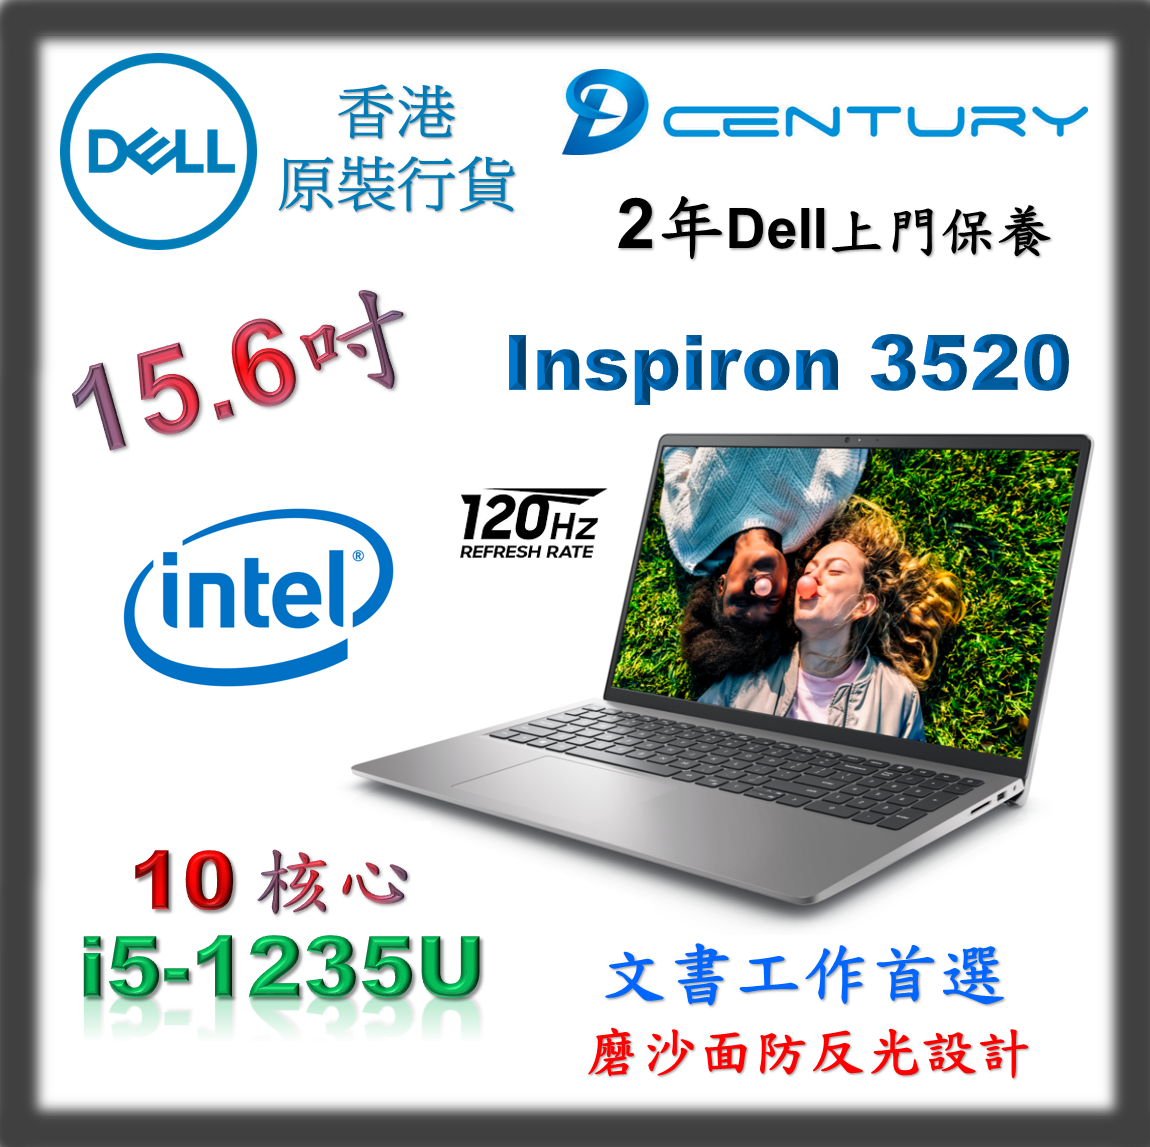 Dell | 12th i5-1235U # 8GB Ram # 512GB SSD # Inspiron 3520